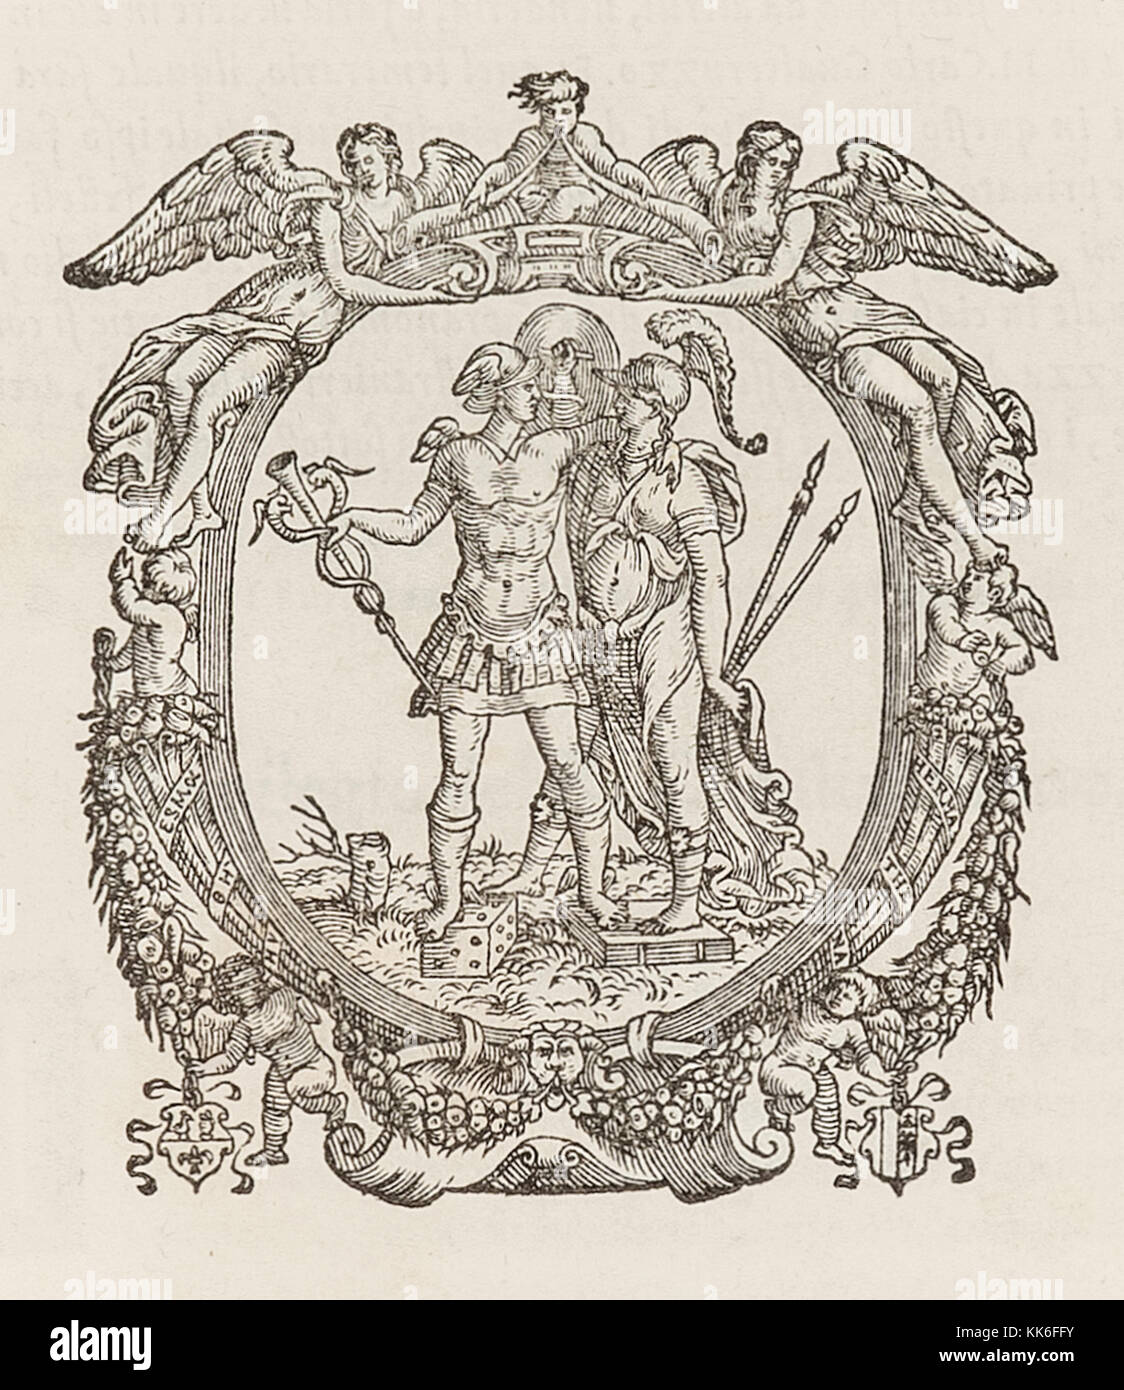 Der Drucker durch Gualtiro Scotto Drucker in Venedig zwischen 1550 bis 1555 verwendet. Hermes ist gezeigt Holding der Caduceus und stand auf einem Sterben in einem reich verzierten Rahmen von Obst, Putten und Engeln umgeben. Weitere Informationen finden Sie unten. Stockfoto